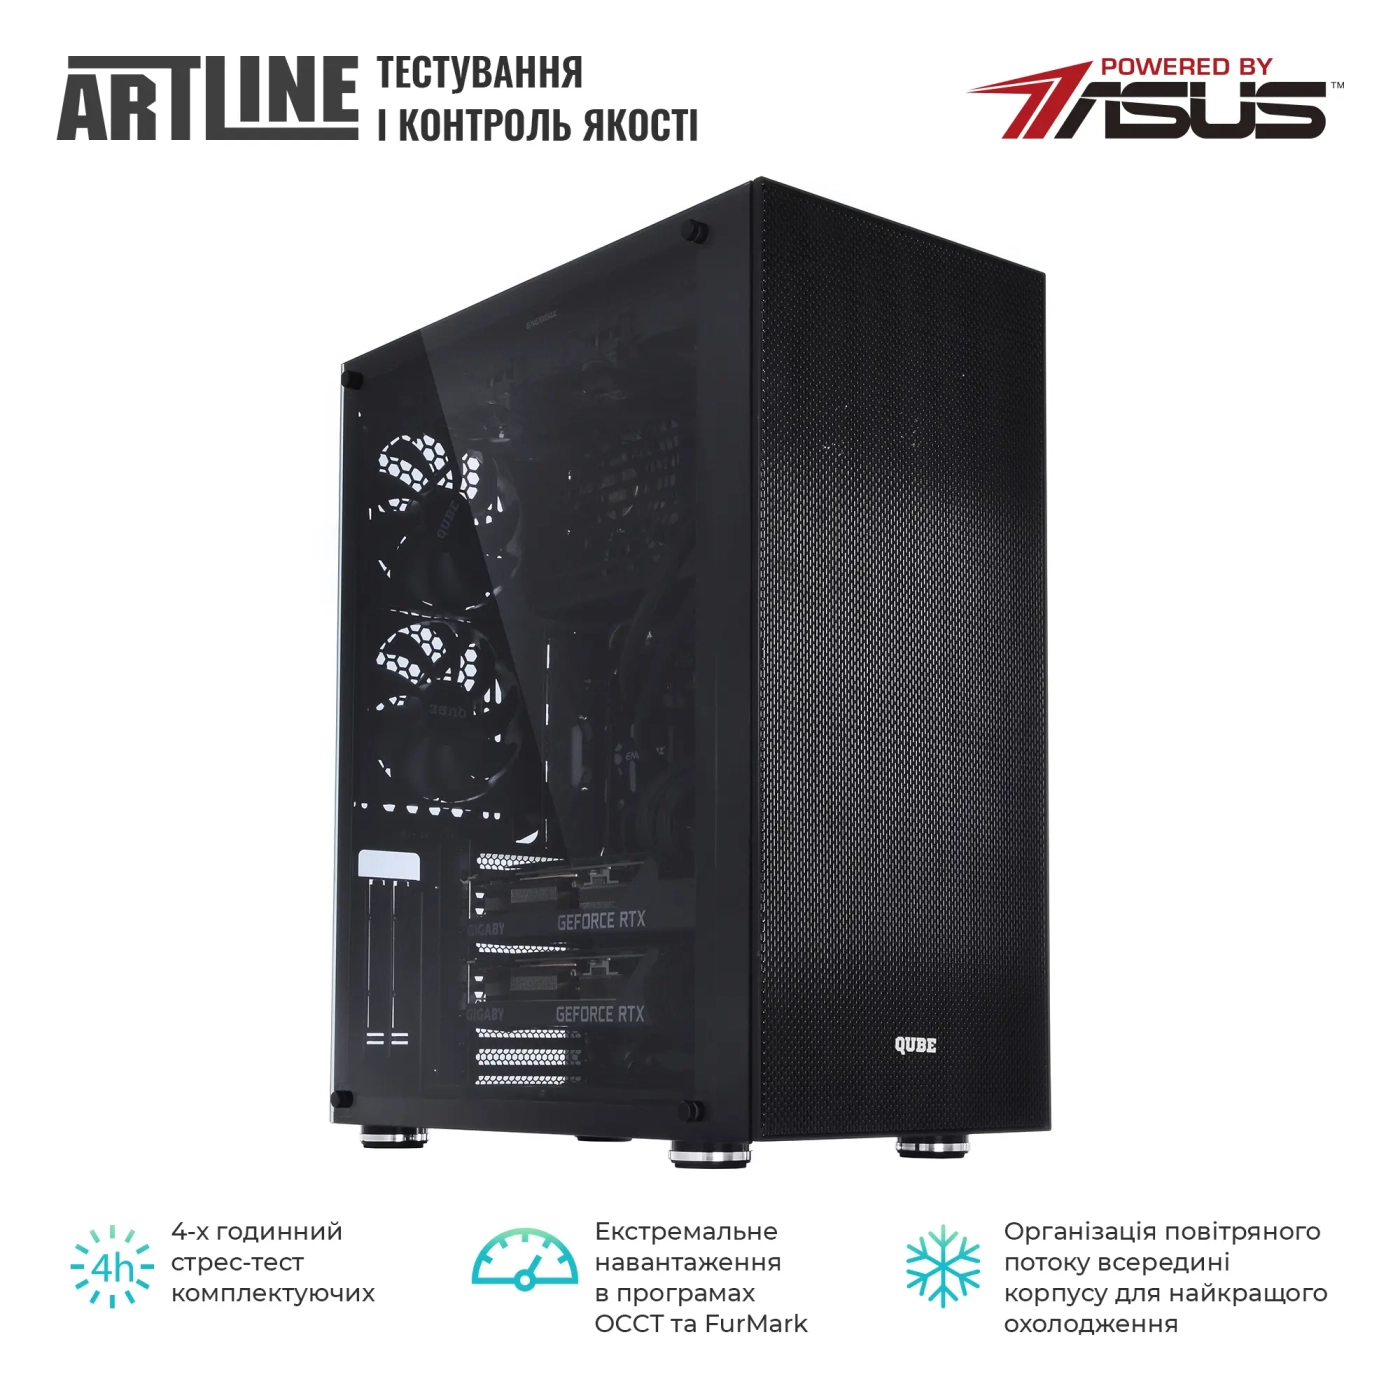 Купить Сервер ARTLINE Business T85v10 - фото 8